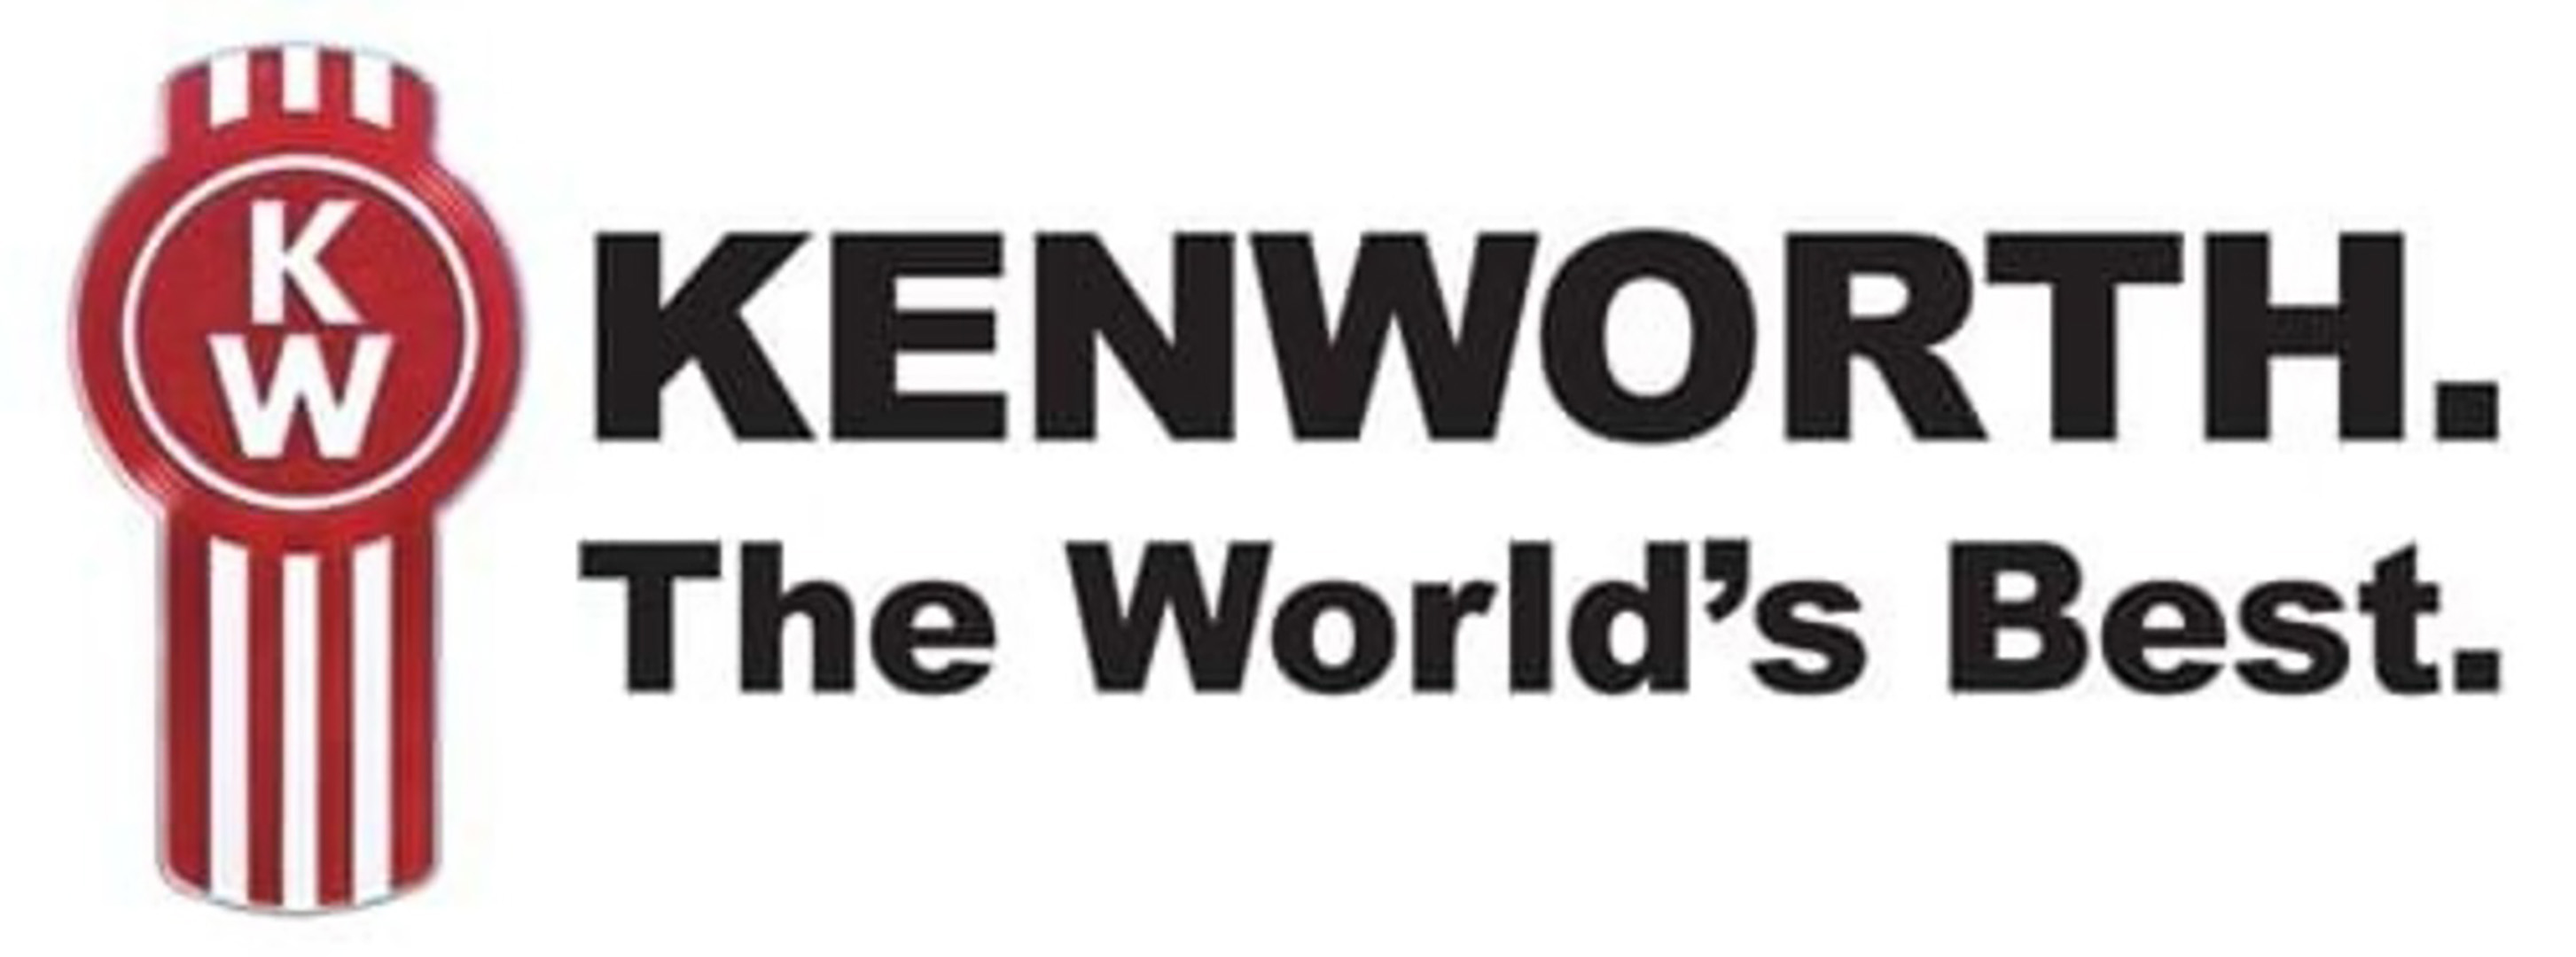 Kenworth the world's best logo